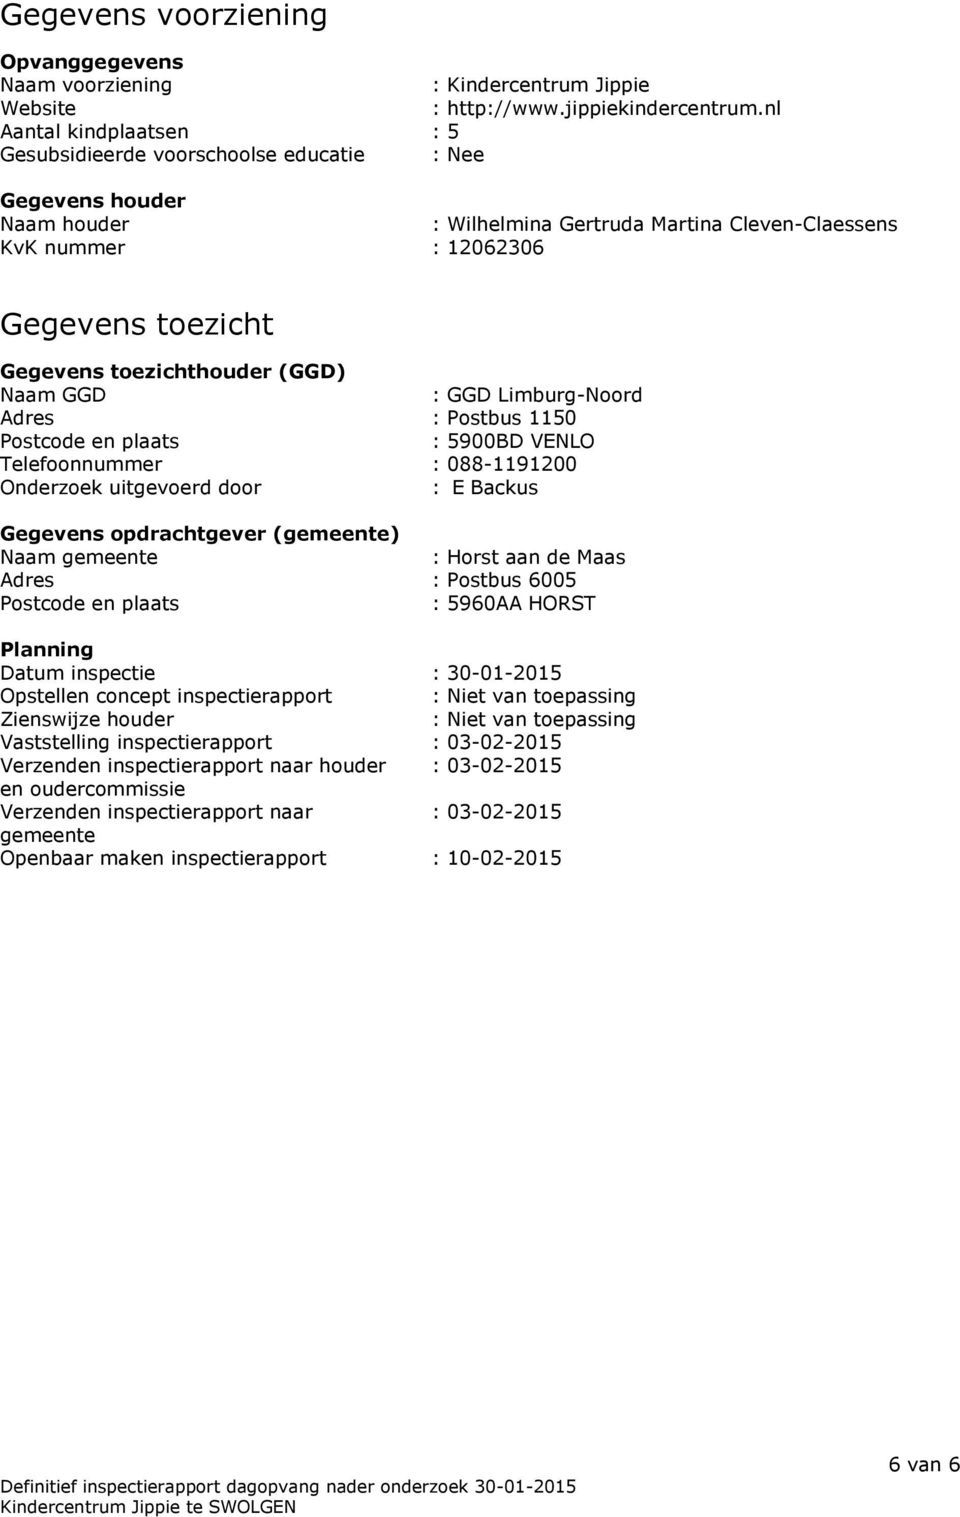 toezichthouder (GGD) Naam GGD : GGD Limburg-Noord Adres : Postbus 1150 Postcode en plaats : 5900BD VENLO Telefoonnummer : 088-1191200 Onderzoek uitgevoerd door : E Backus Gegevens opdrachtgever